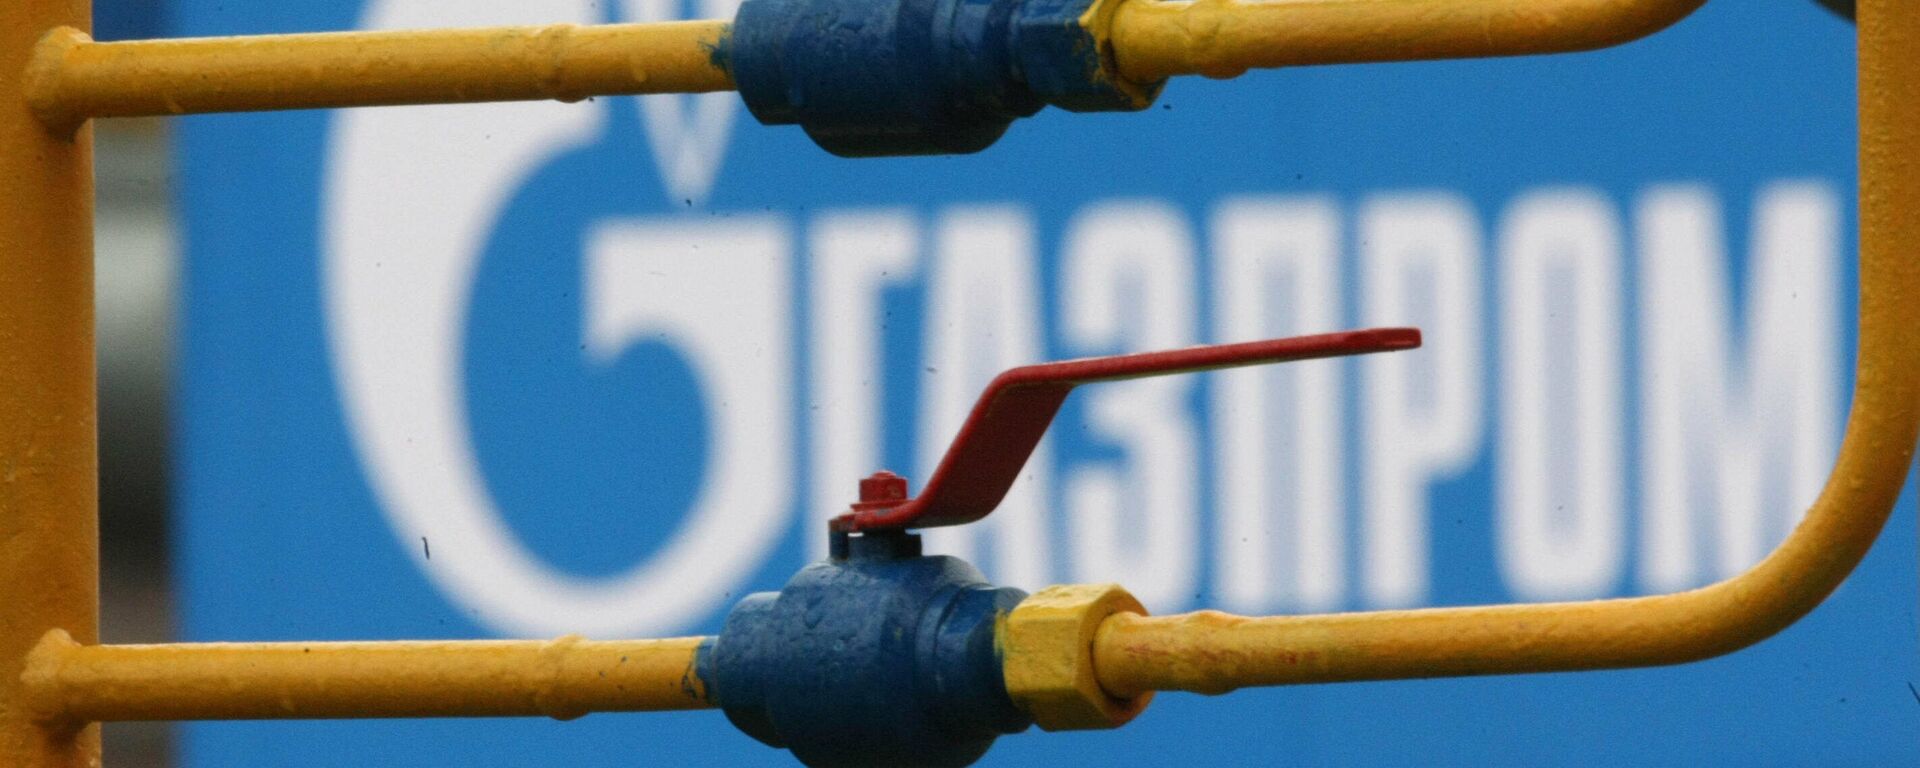 Gazprom va rezilia contractul de livrare a gazului, după publicare contractului - Opinie - Sputnik Moldova, 1920, 23.02.2022